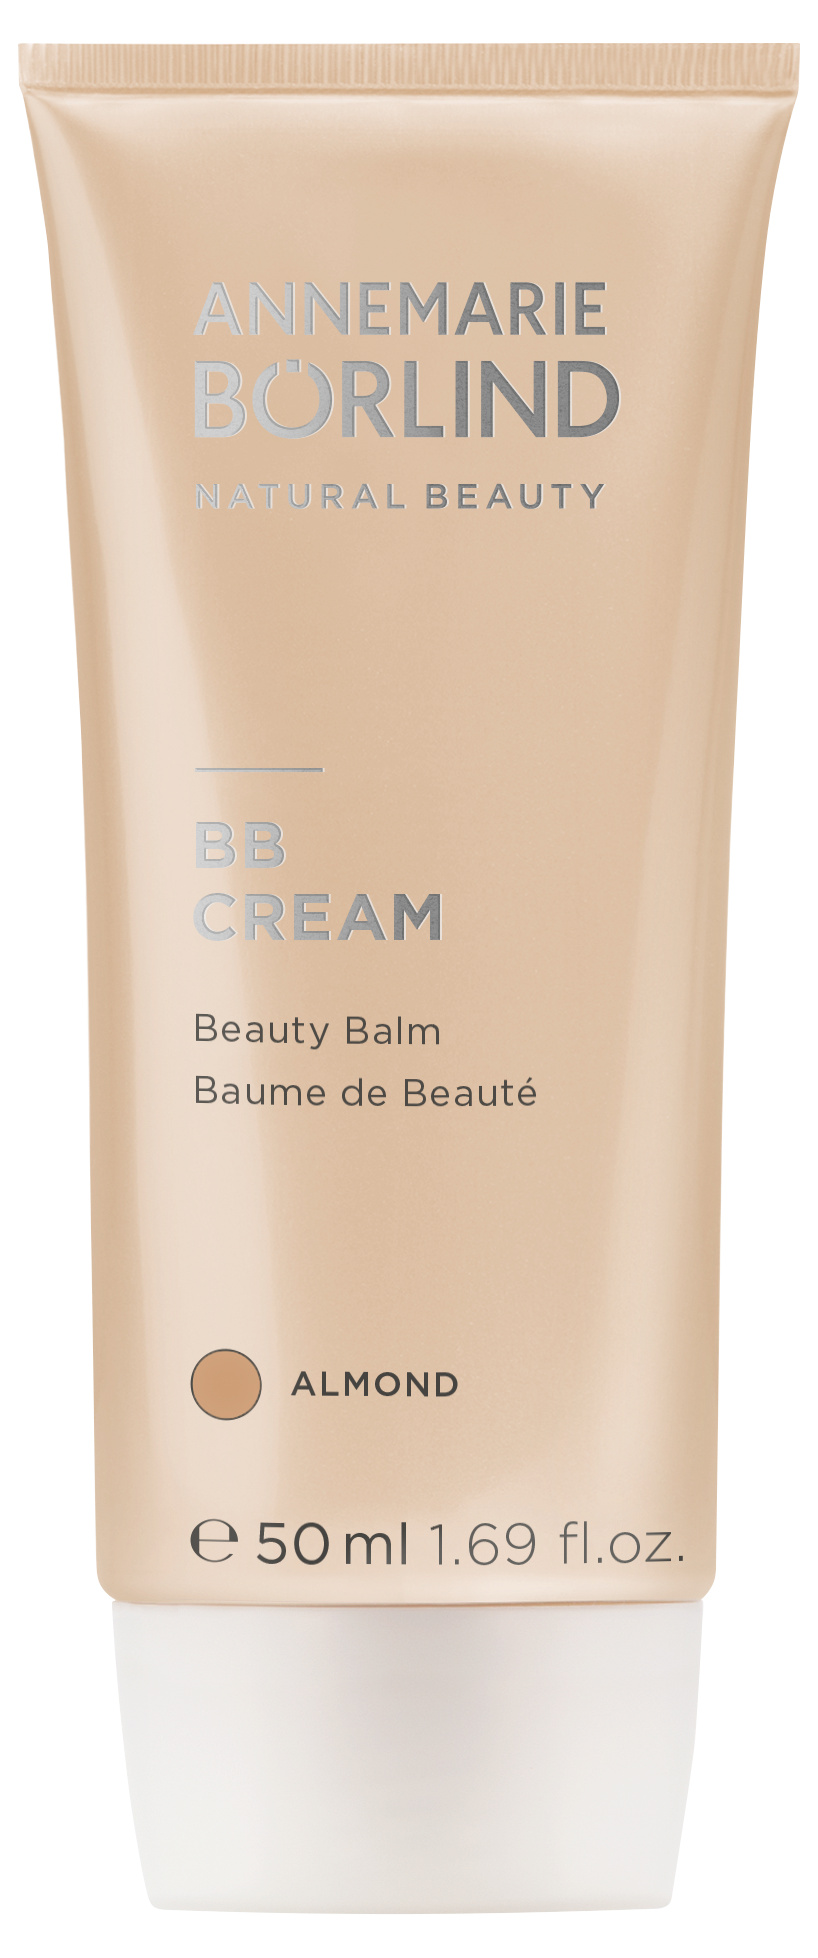 Börlind BB Cream Almond 50ml